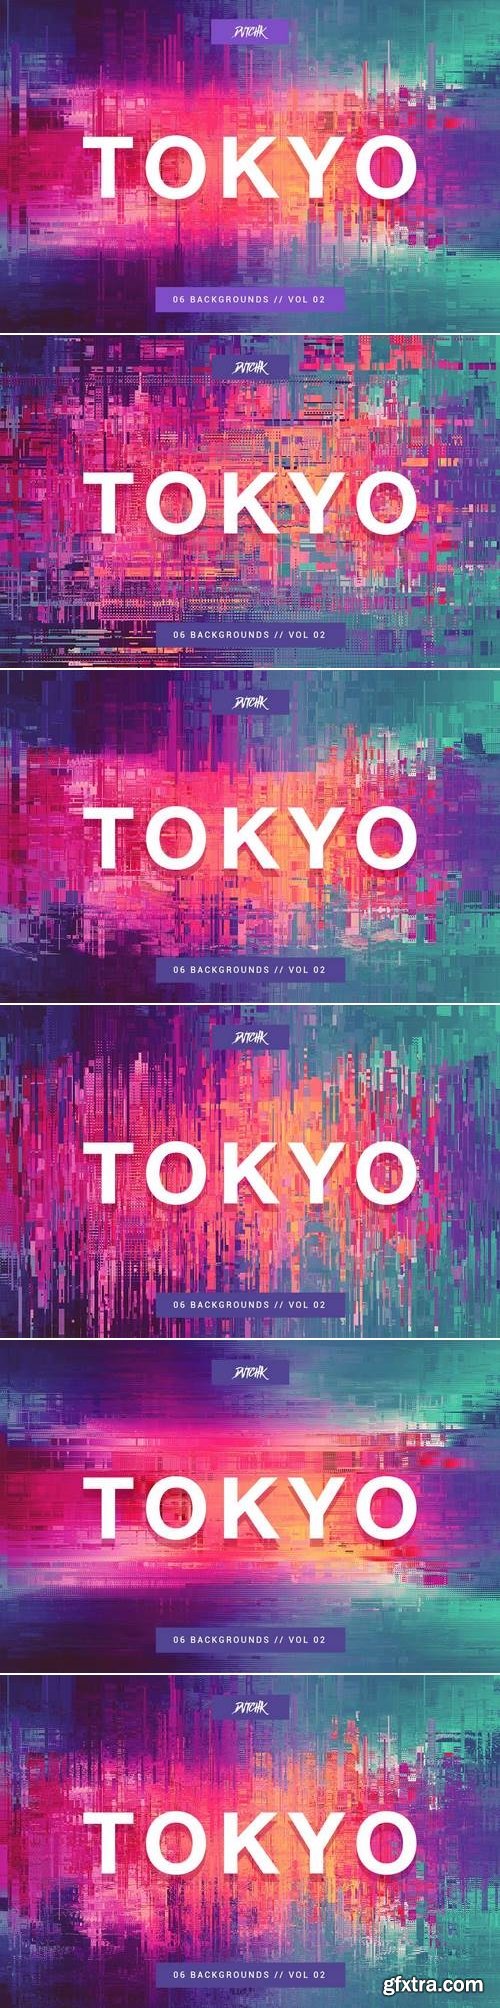 Tokyo| City Glitch Backgrounds | Vol. 02